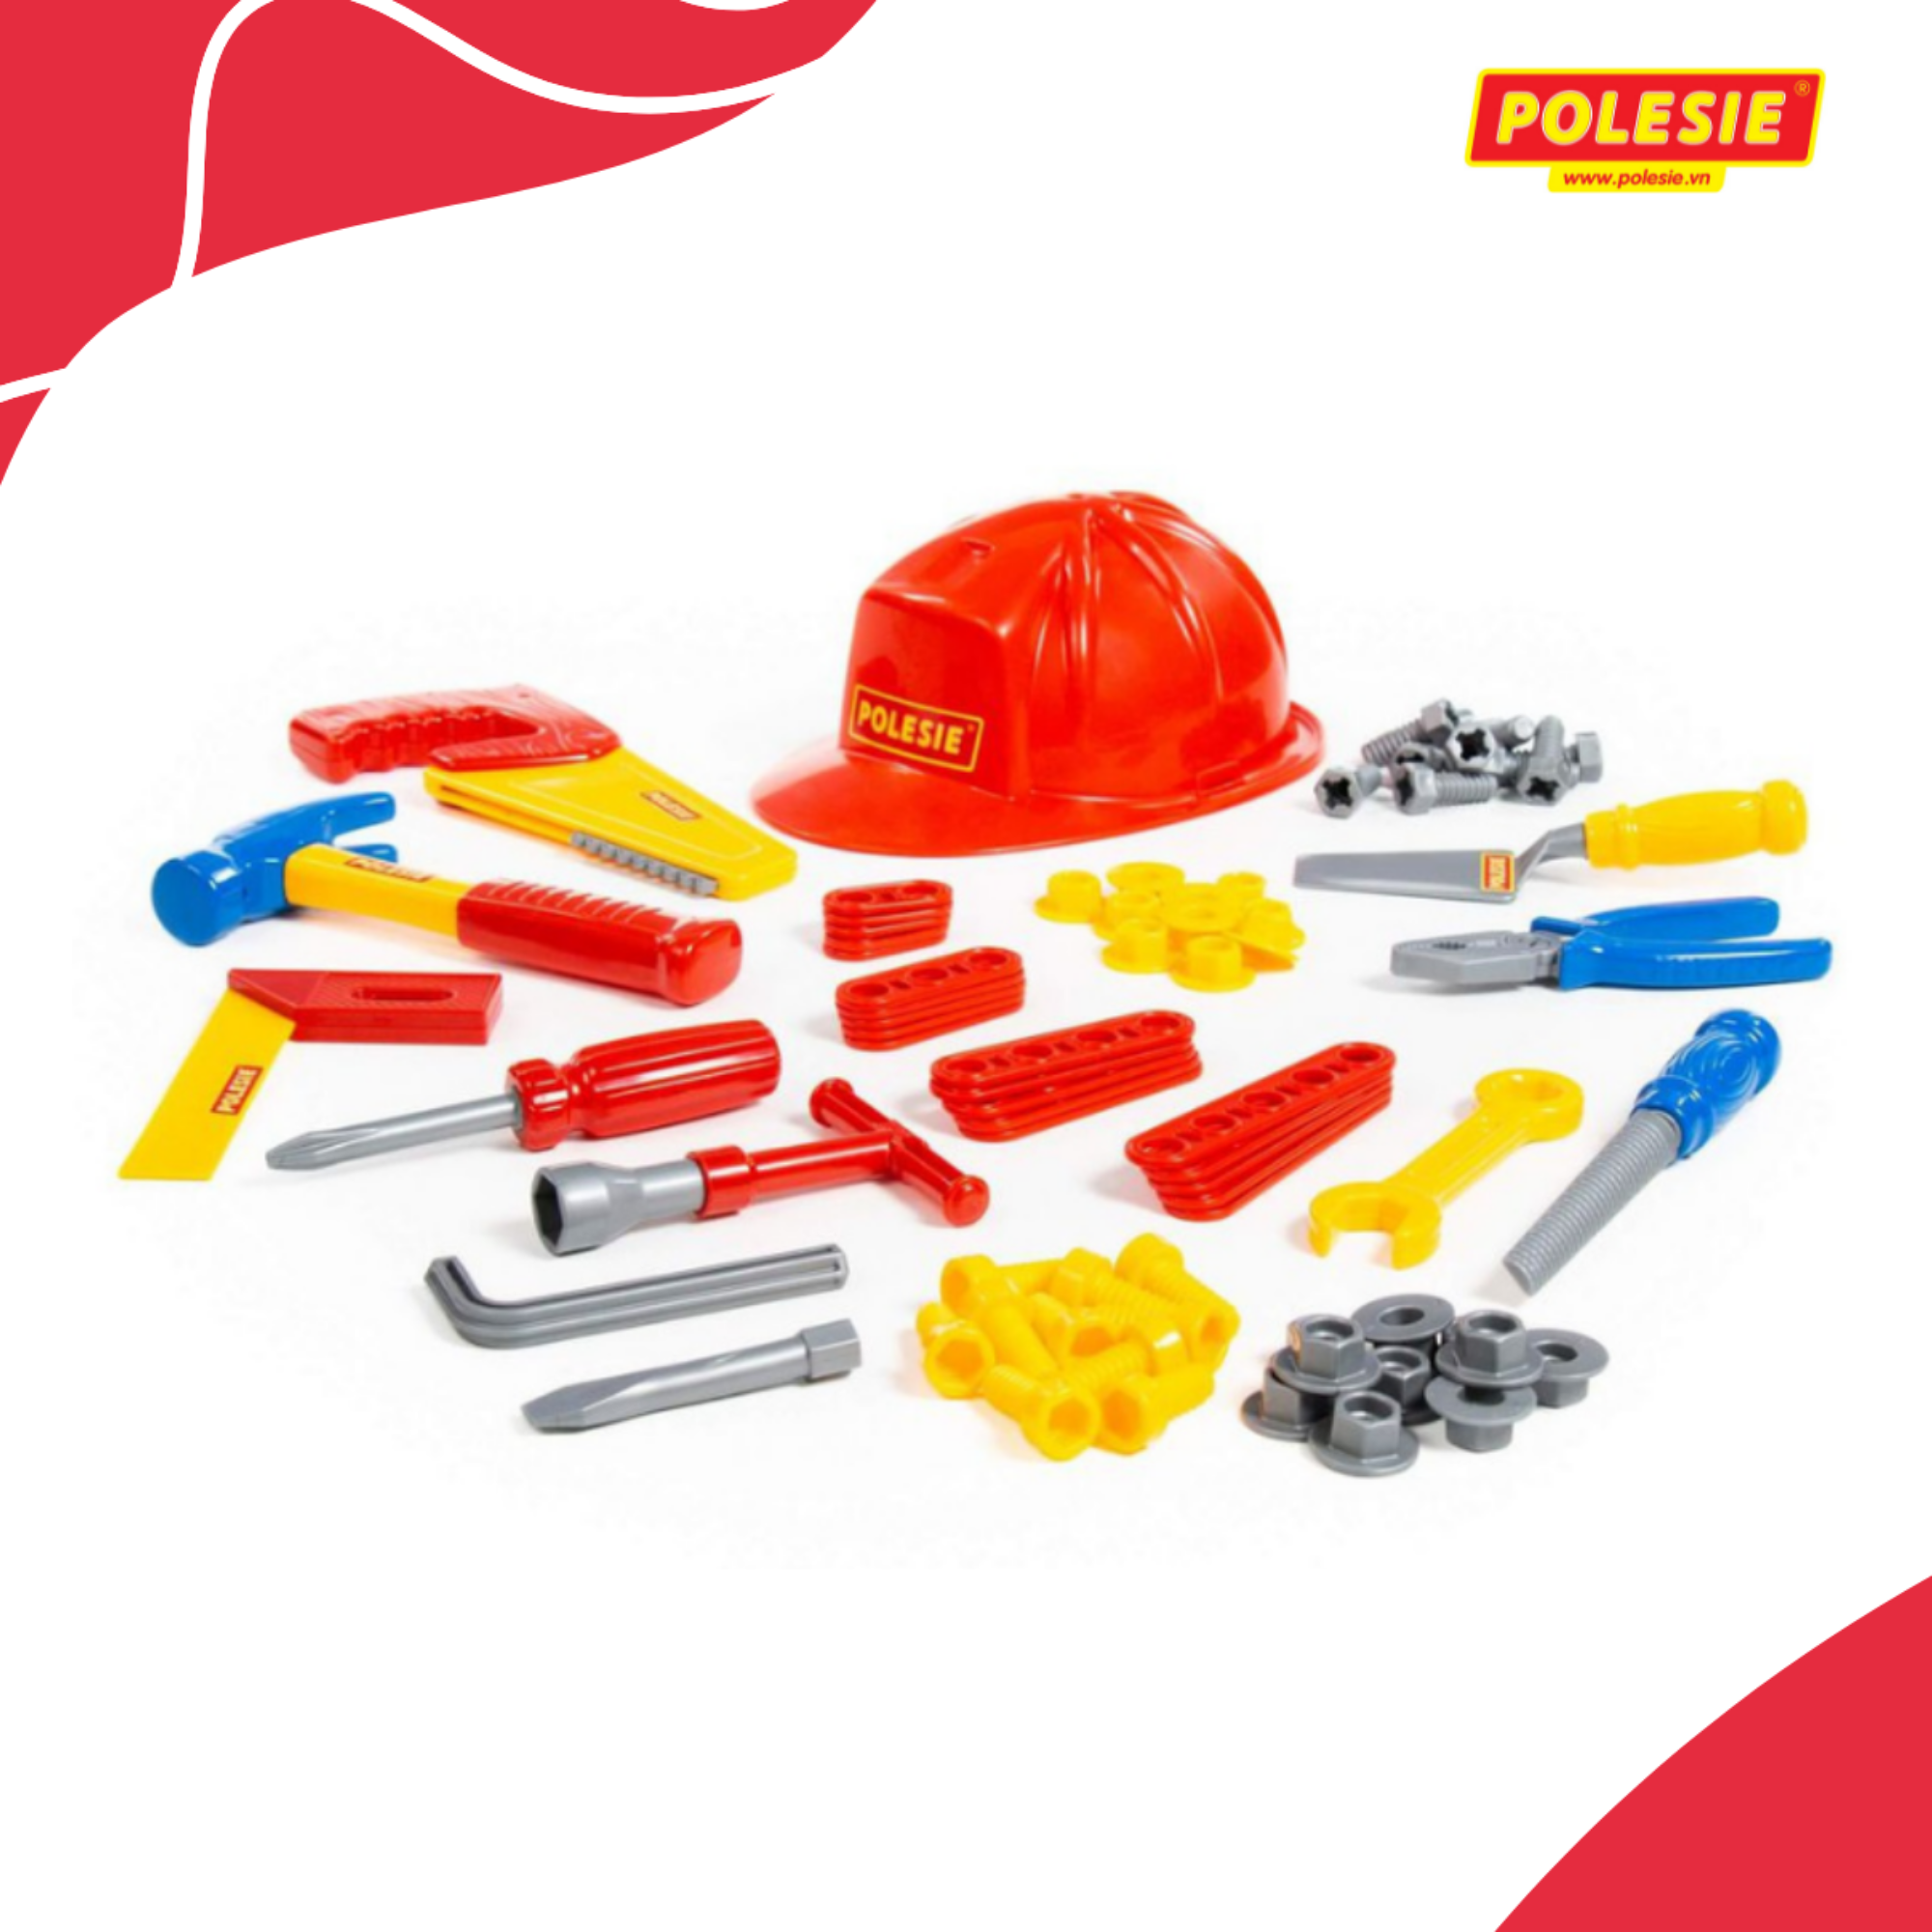 Bộ đồ chơi dụng cụ kỹ thuật 74 chi tiết - Polesie Toys